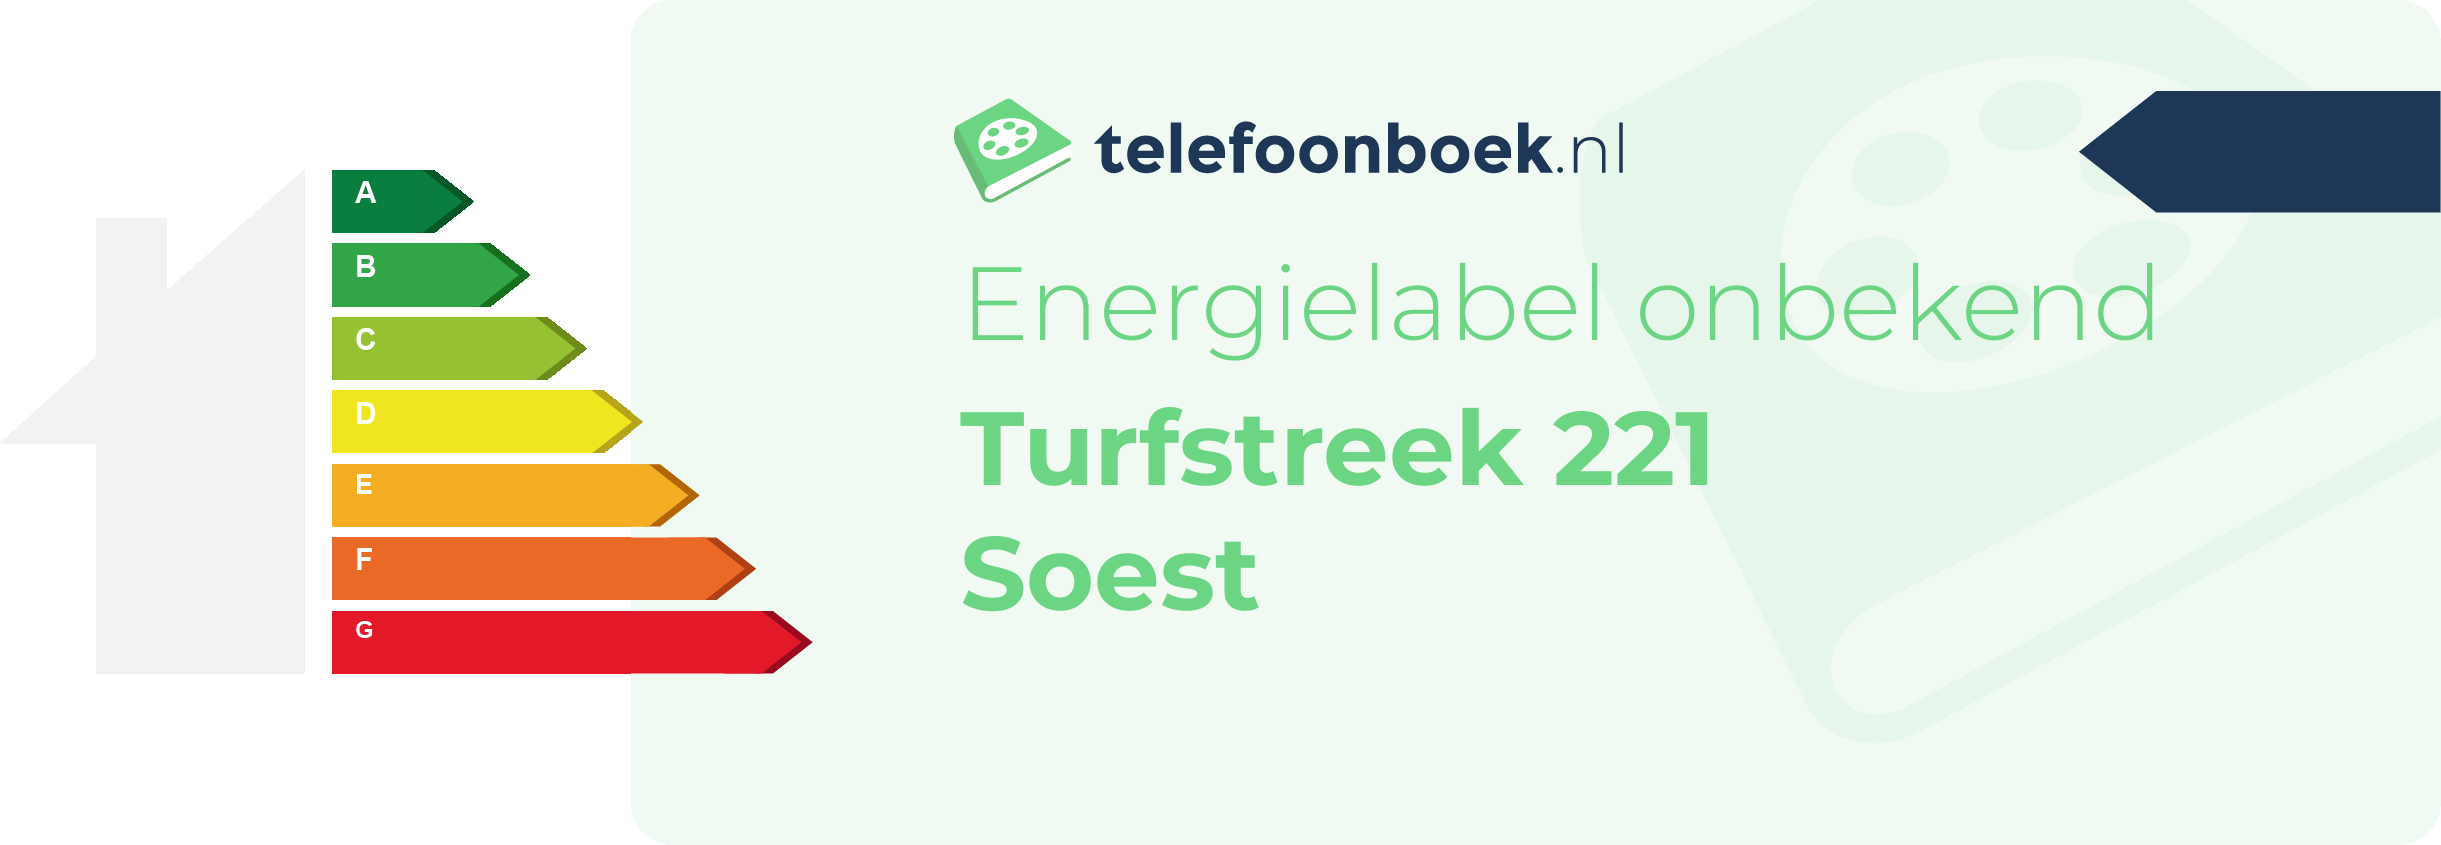 Energielabel Turfstreek 221 Soest